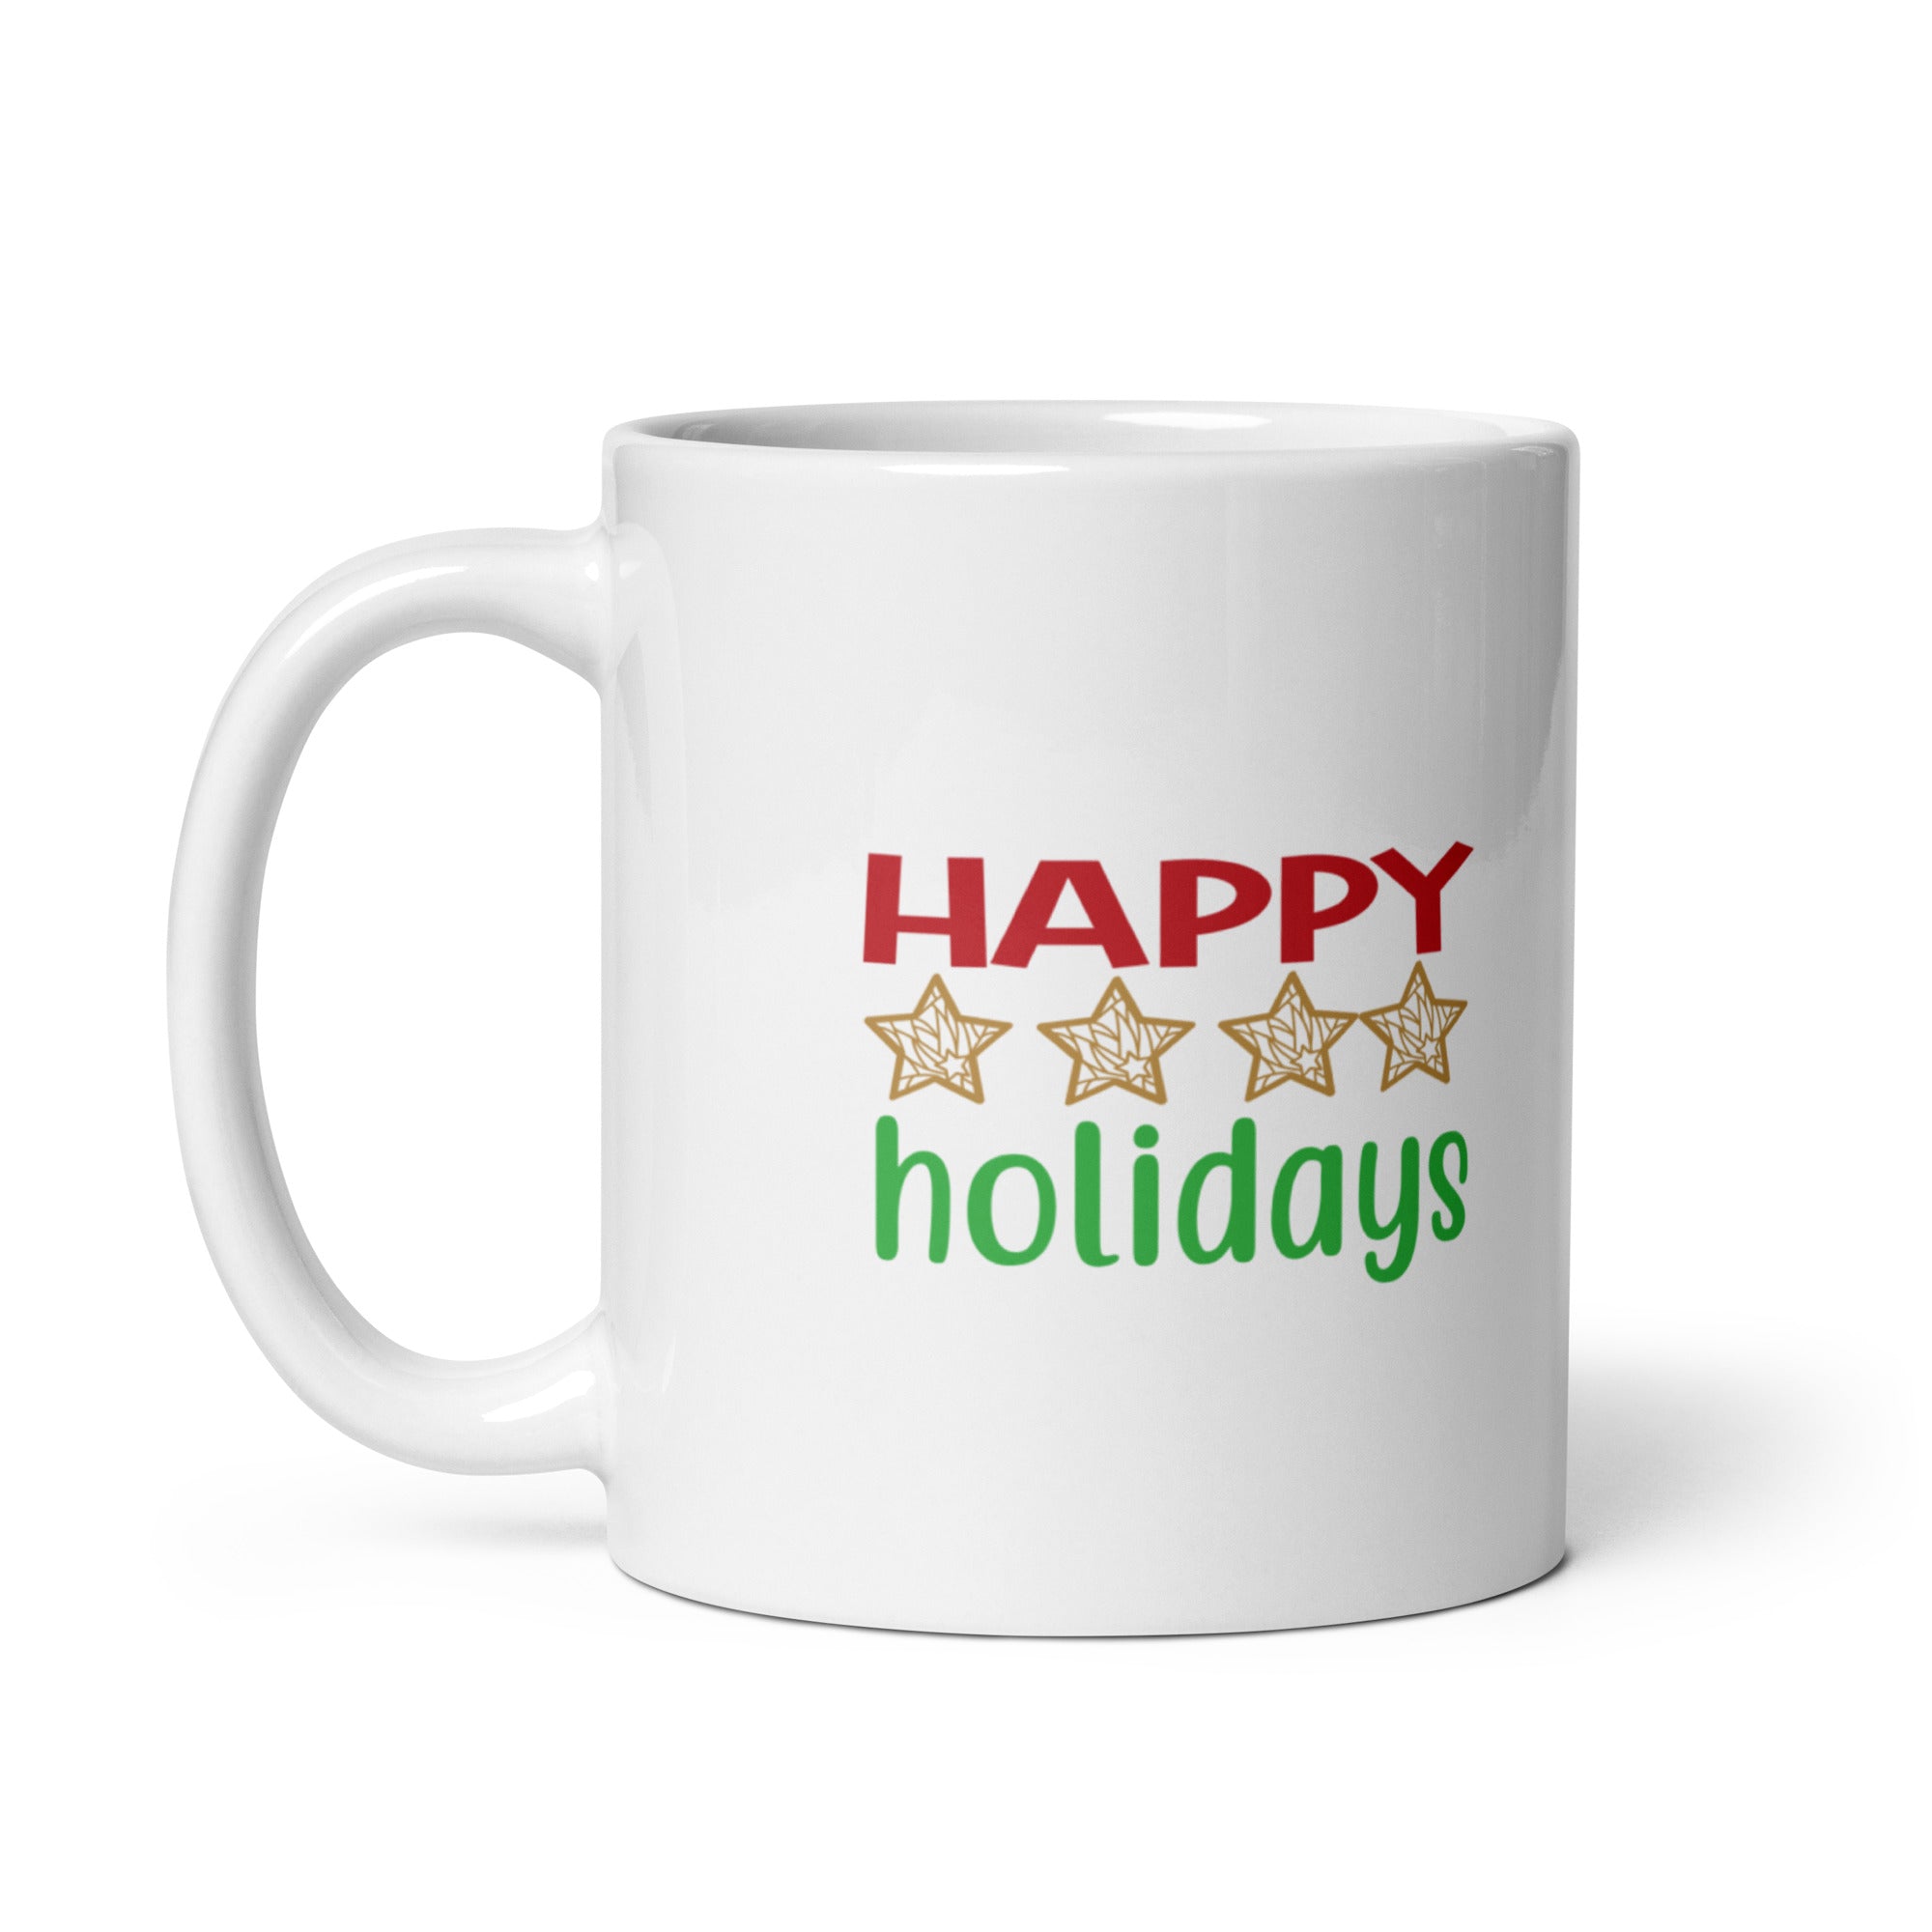 Happy Holidays - White glossy mug